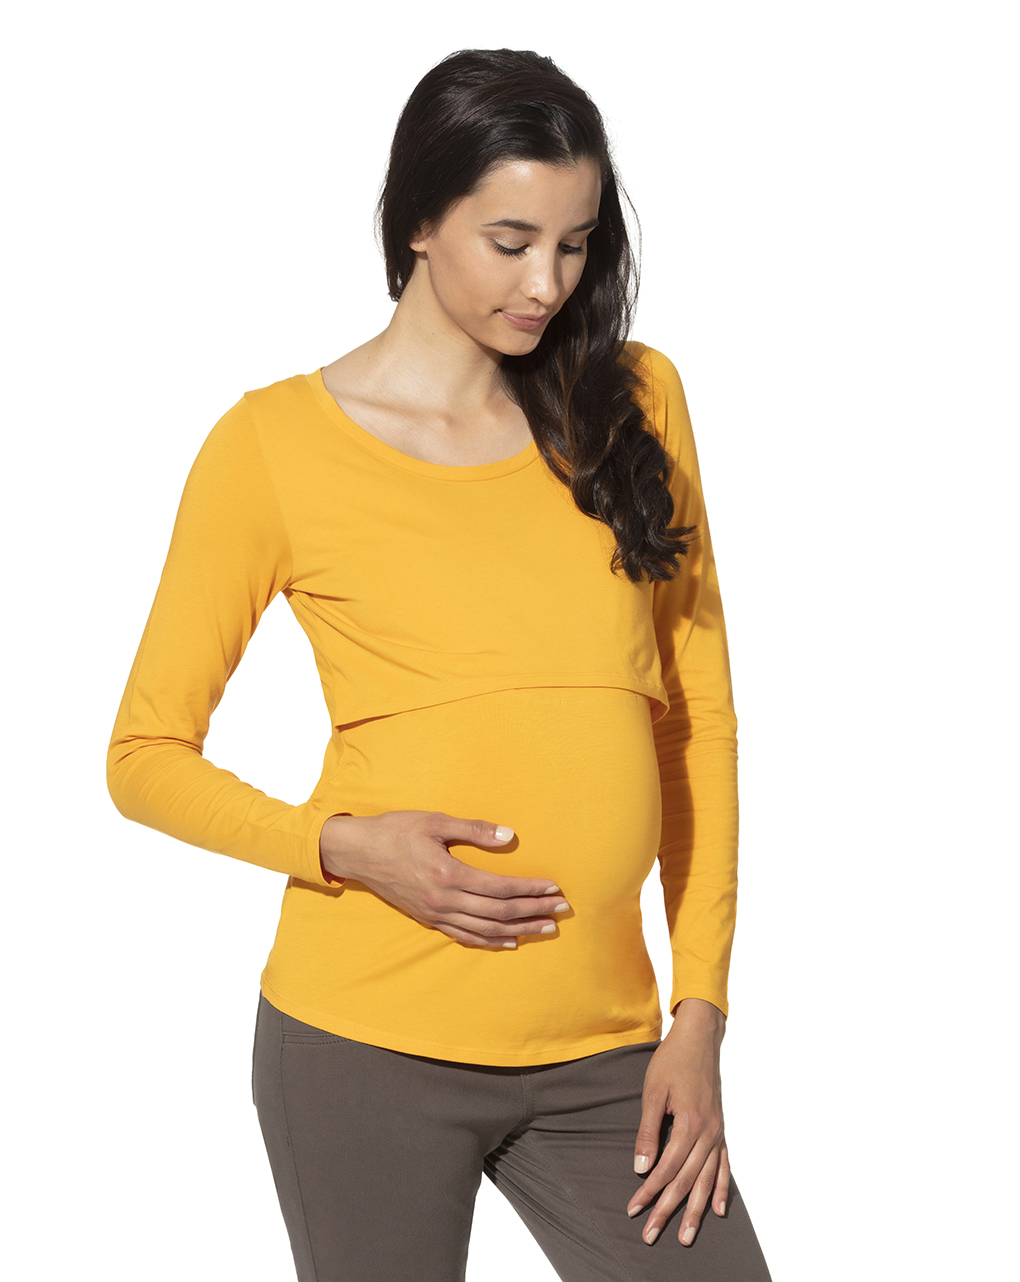 γυναικείο t-shirt θηλασμού κίτρινο - Prénatal